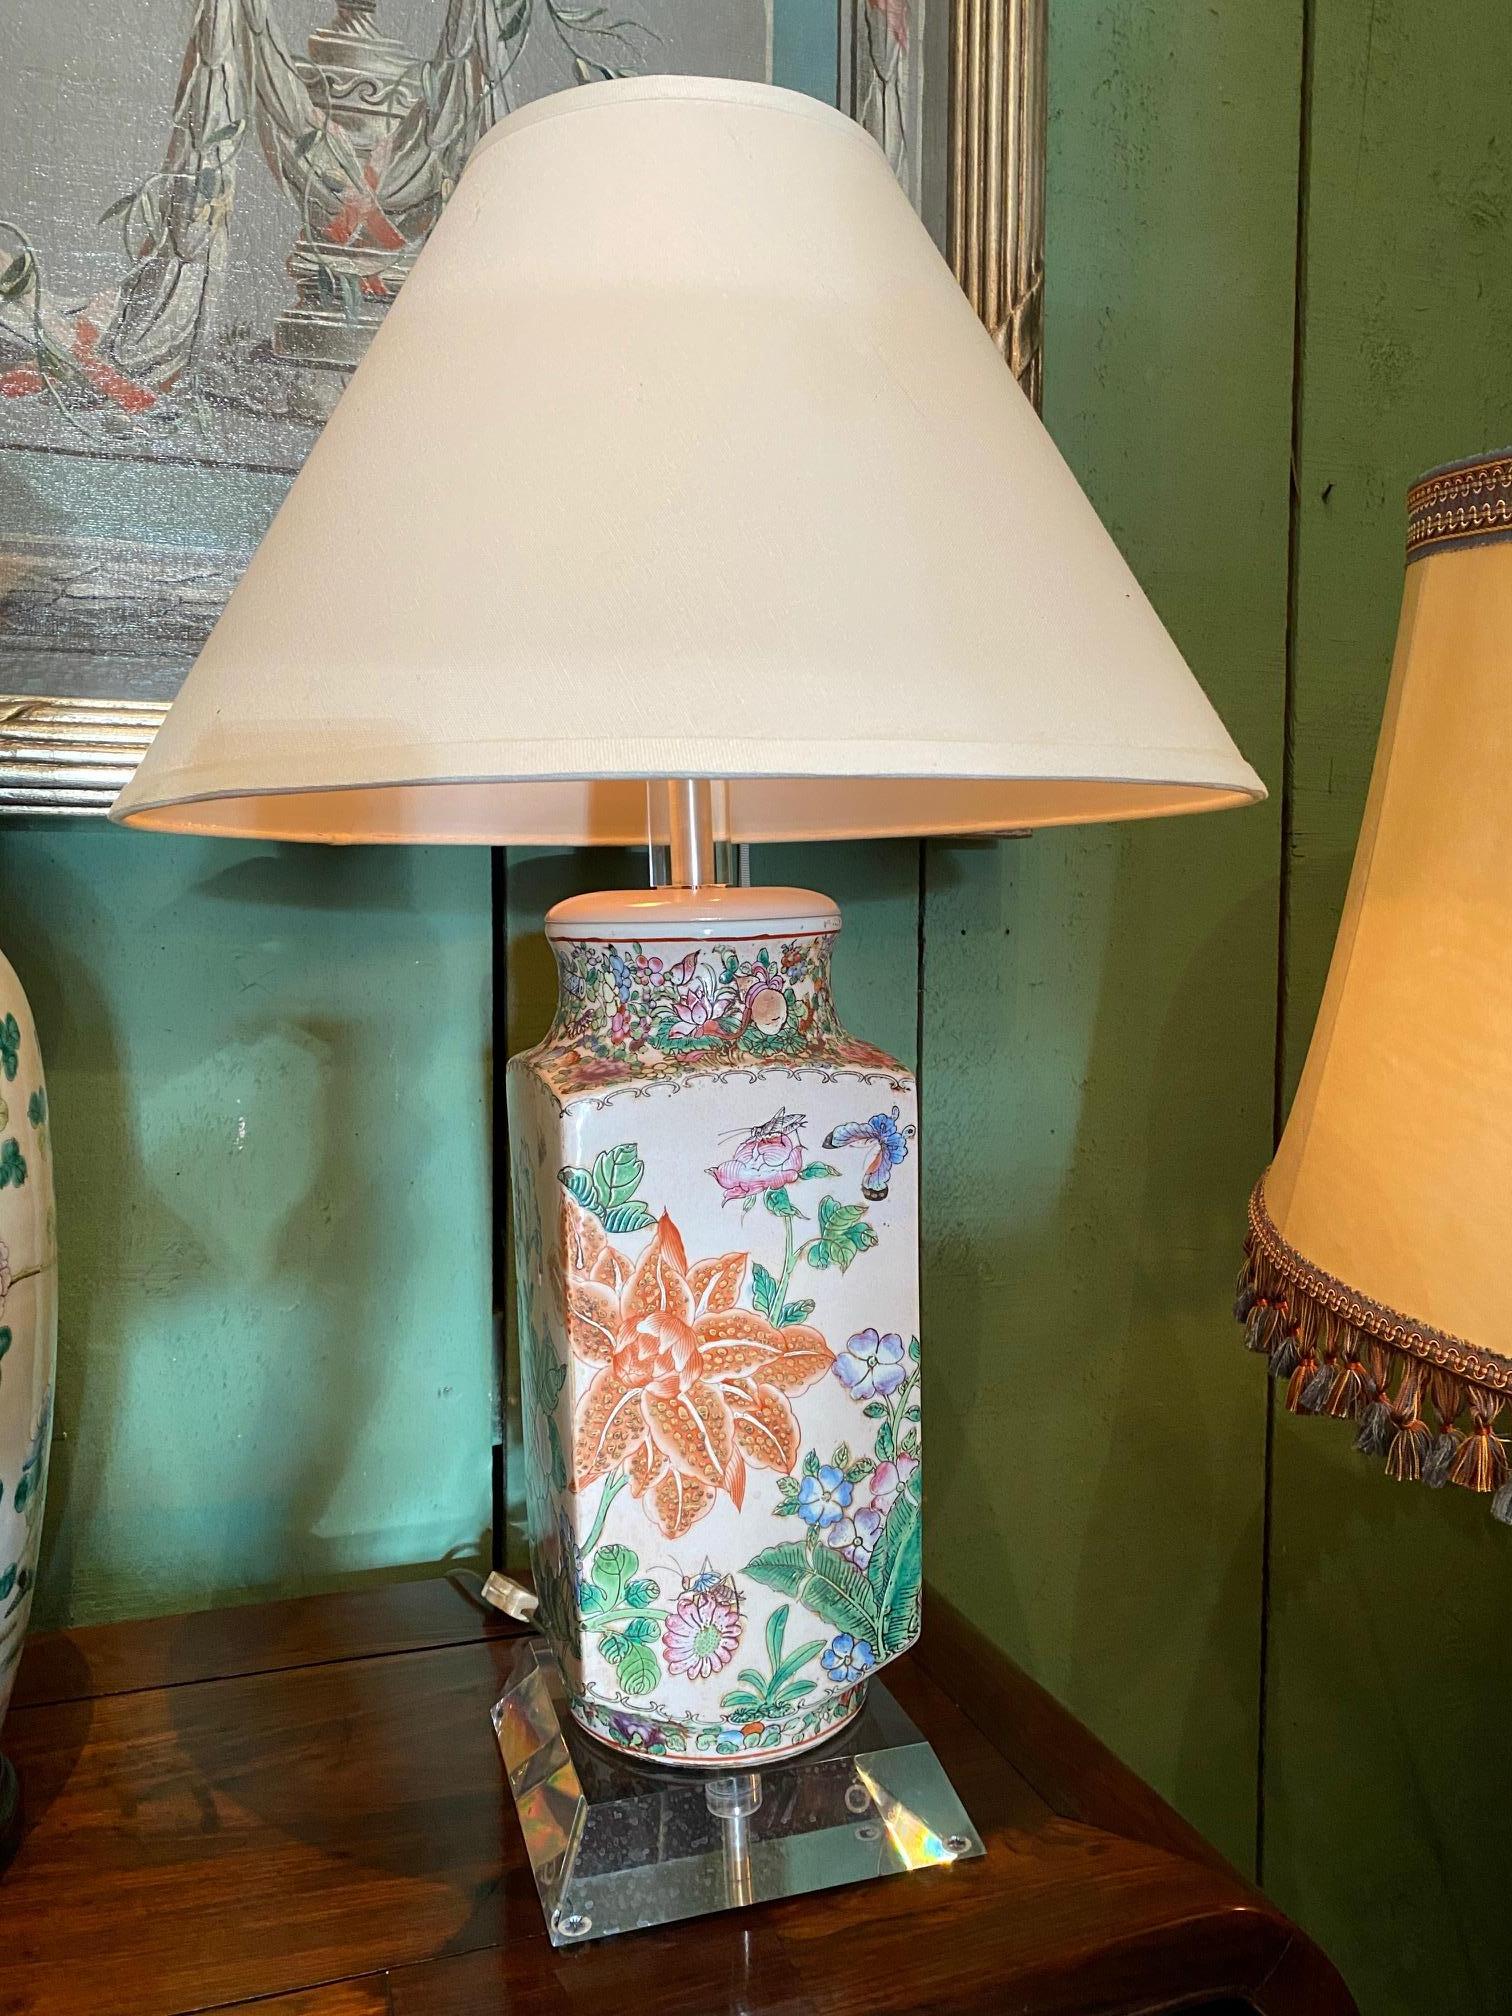 Paire de beaux vases orientaux de chinoiserie du 19ème siècle avec montures en plexiglas câblés comme lampes Avec de simples abat-jour anciens faits à la main. Vases carrés décorés d'un ensemble de fleurs symboliques dans les tons bleu et blanc,